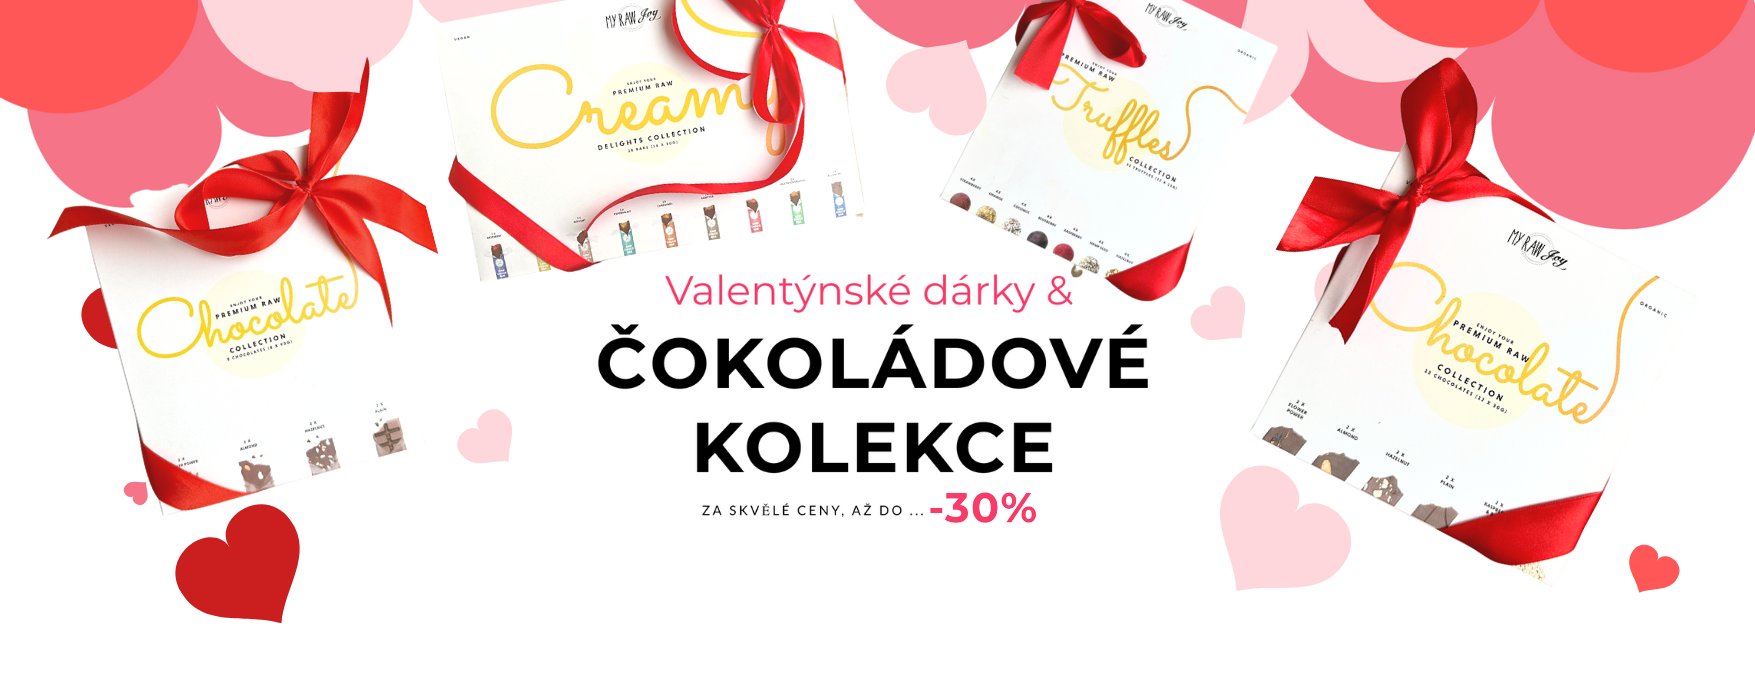 CZK Valentine offer